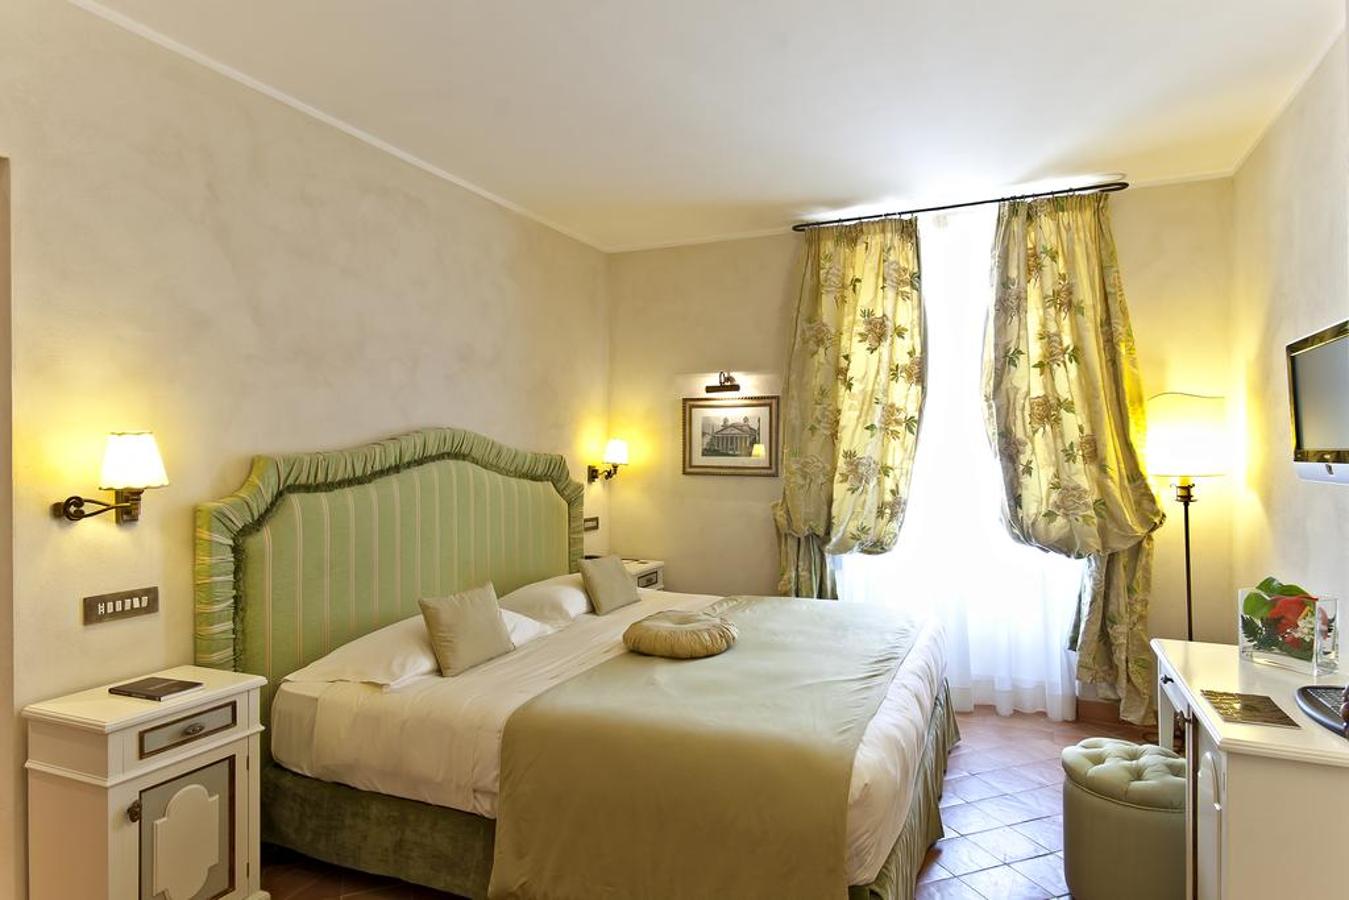 VOI Donna Camilla Savelli Hotel (Roma, Italia). Este <a href="https://www.booking.com/searchresults.es.html?aid=1371680;sid=ea02087844b11045d523d419d14cb4fb;city=-126693;expand_sb=1;highlighted_hotels=89847;hlrd=no_dates;keep_landing=1;redirected=1;source=hotel&amp;" target="_blank">increíble alojamiento</a> dispone de habitaciones elegantes, jardín privado y terraza con vistas a la Ciudad eterna.